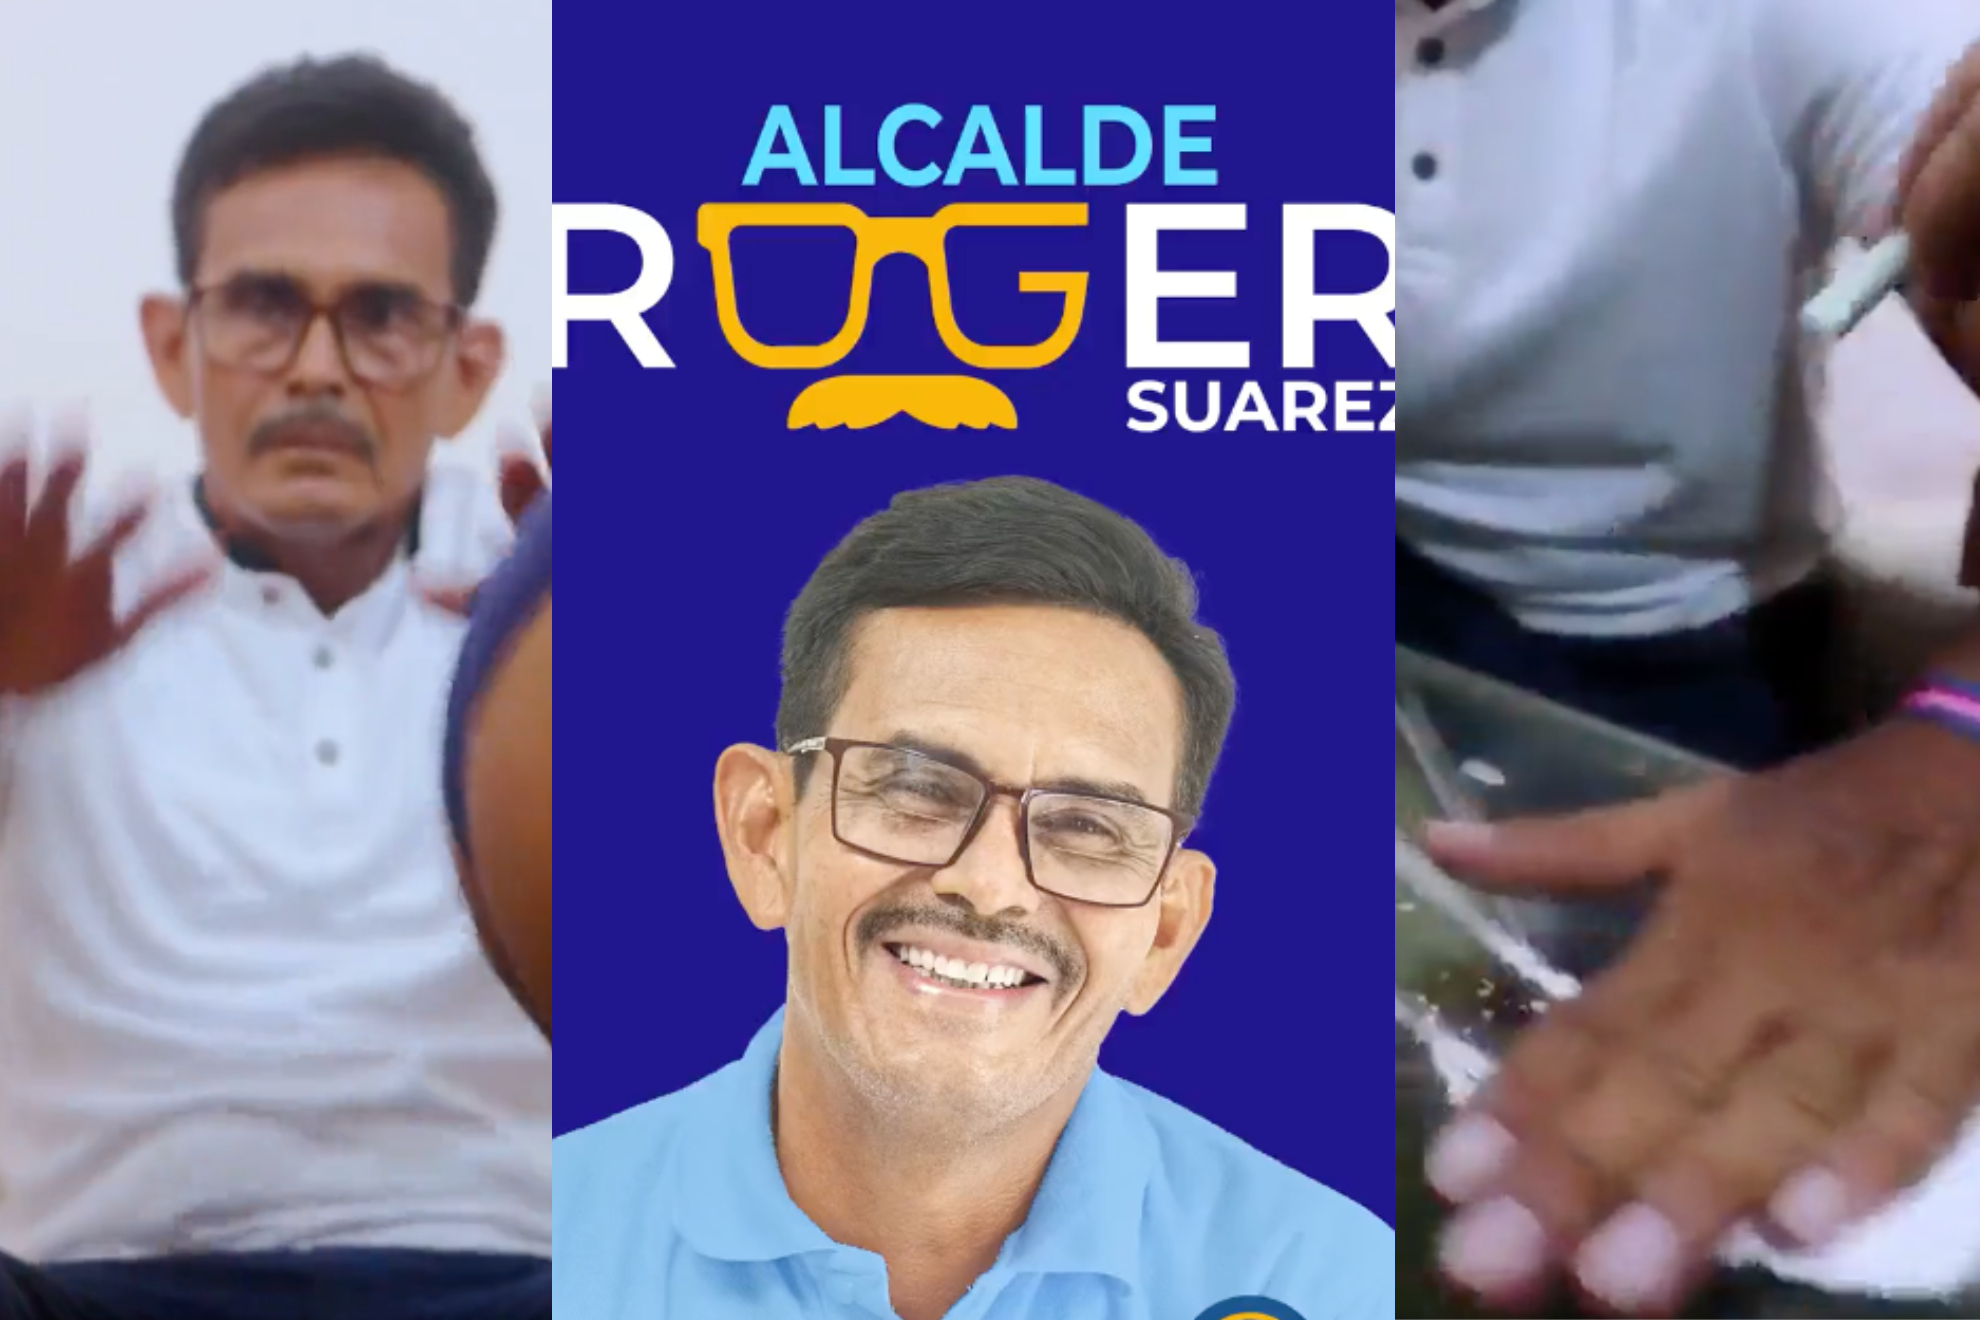 El candidato a alcalde, Roger Suárez, ha llamado la atención con su polémica campaña a base de videos provocadores.